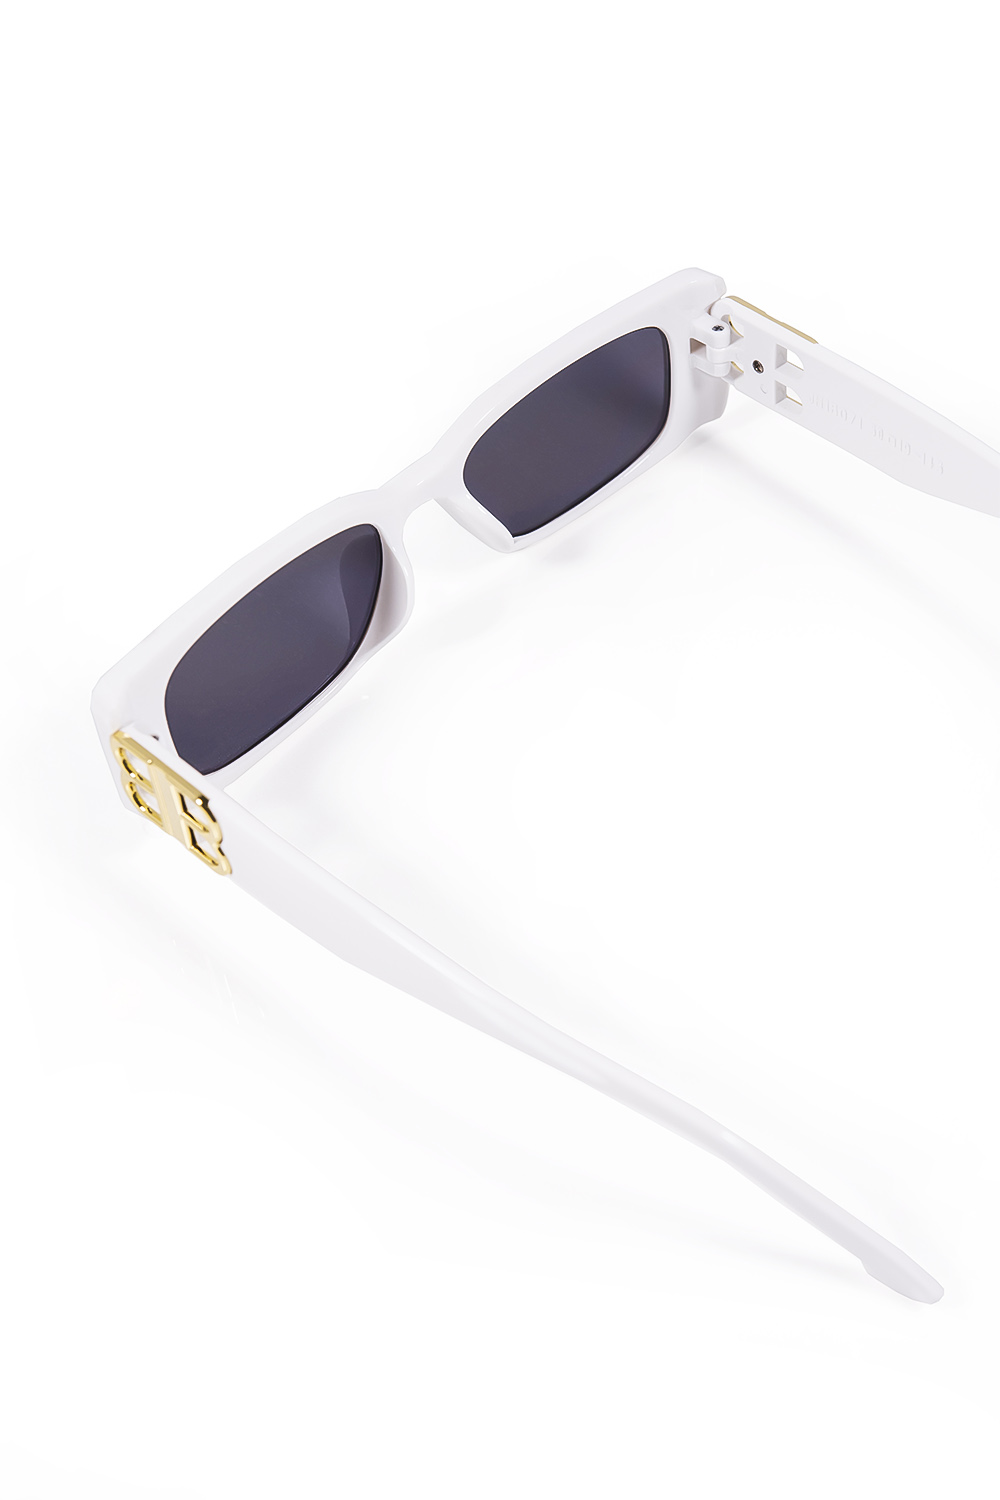 Άσπρα γυαλιά ηλίου ορθογώνια με χρυσή λεπτομέρεια